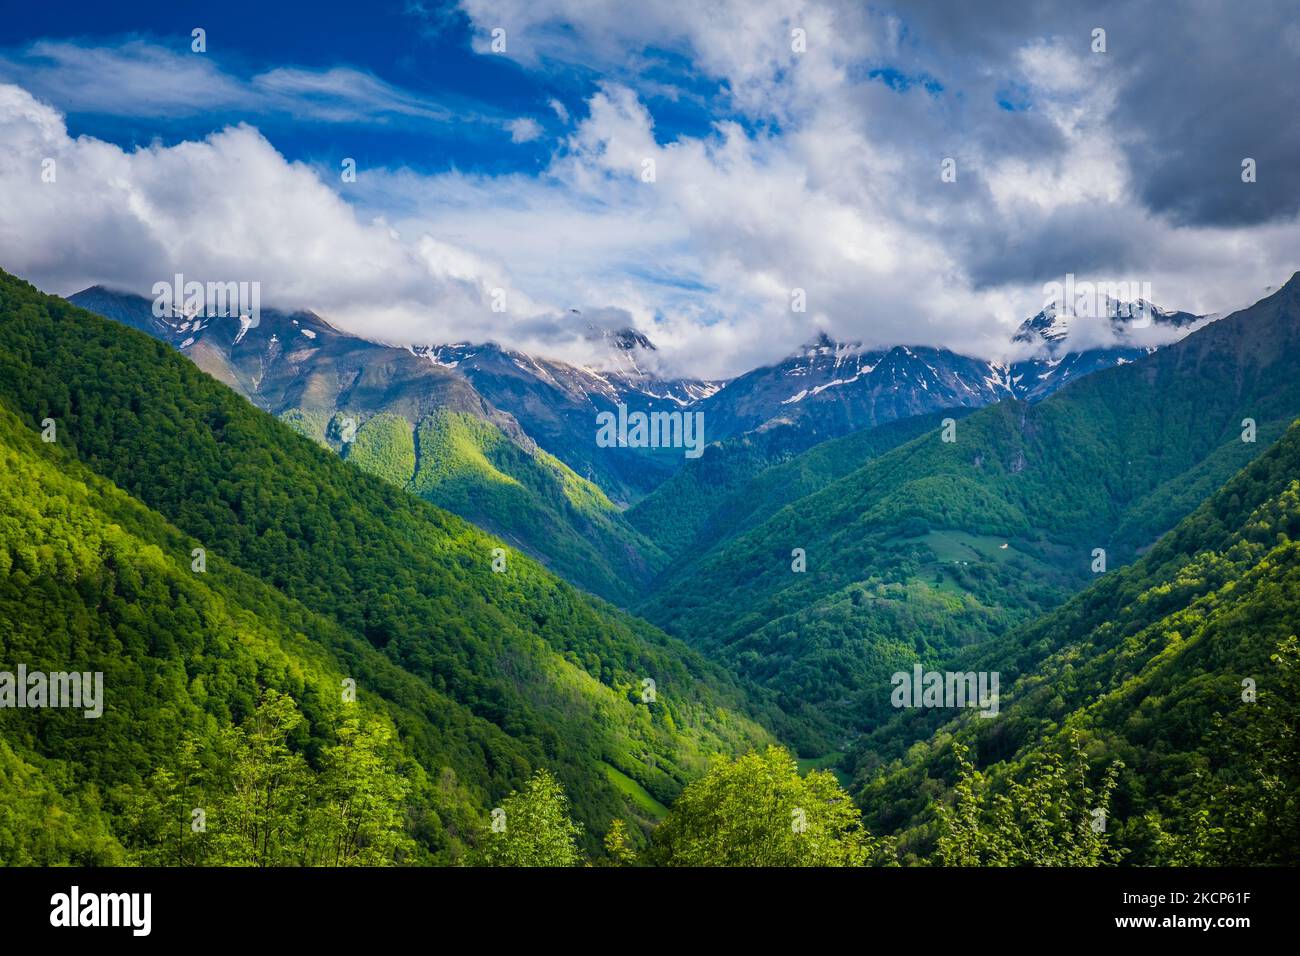 Vista sulla valle del fiume Lez con cime innevate sullo sfondo in una bella giornata estiva nella catena montuosa dei Pirenei francesi Foto Stock